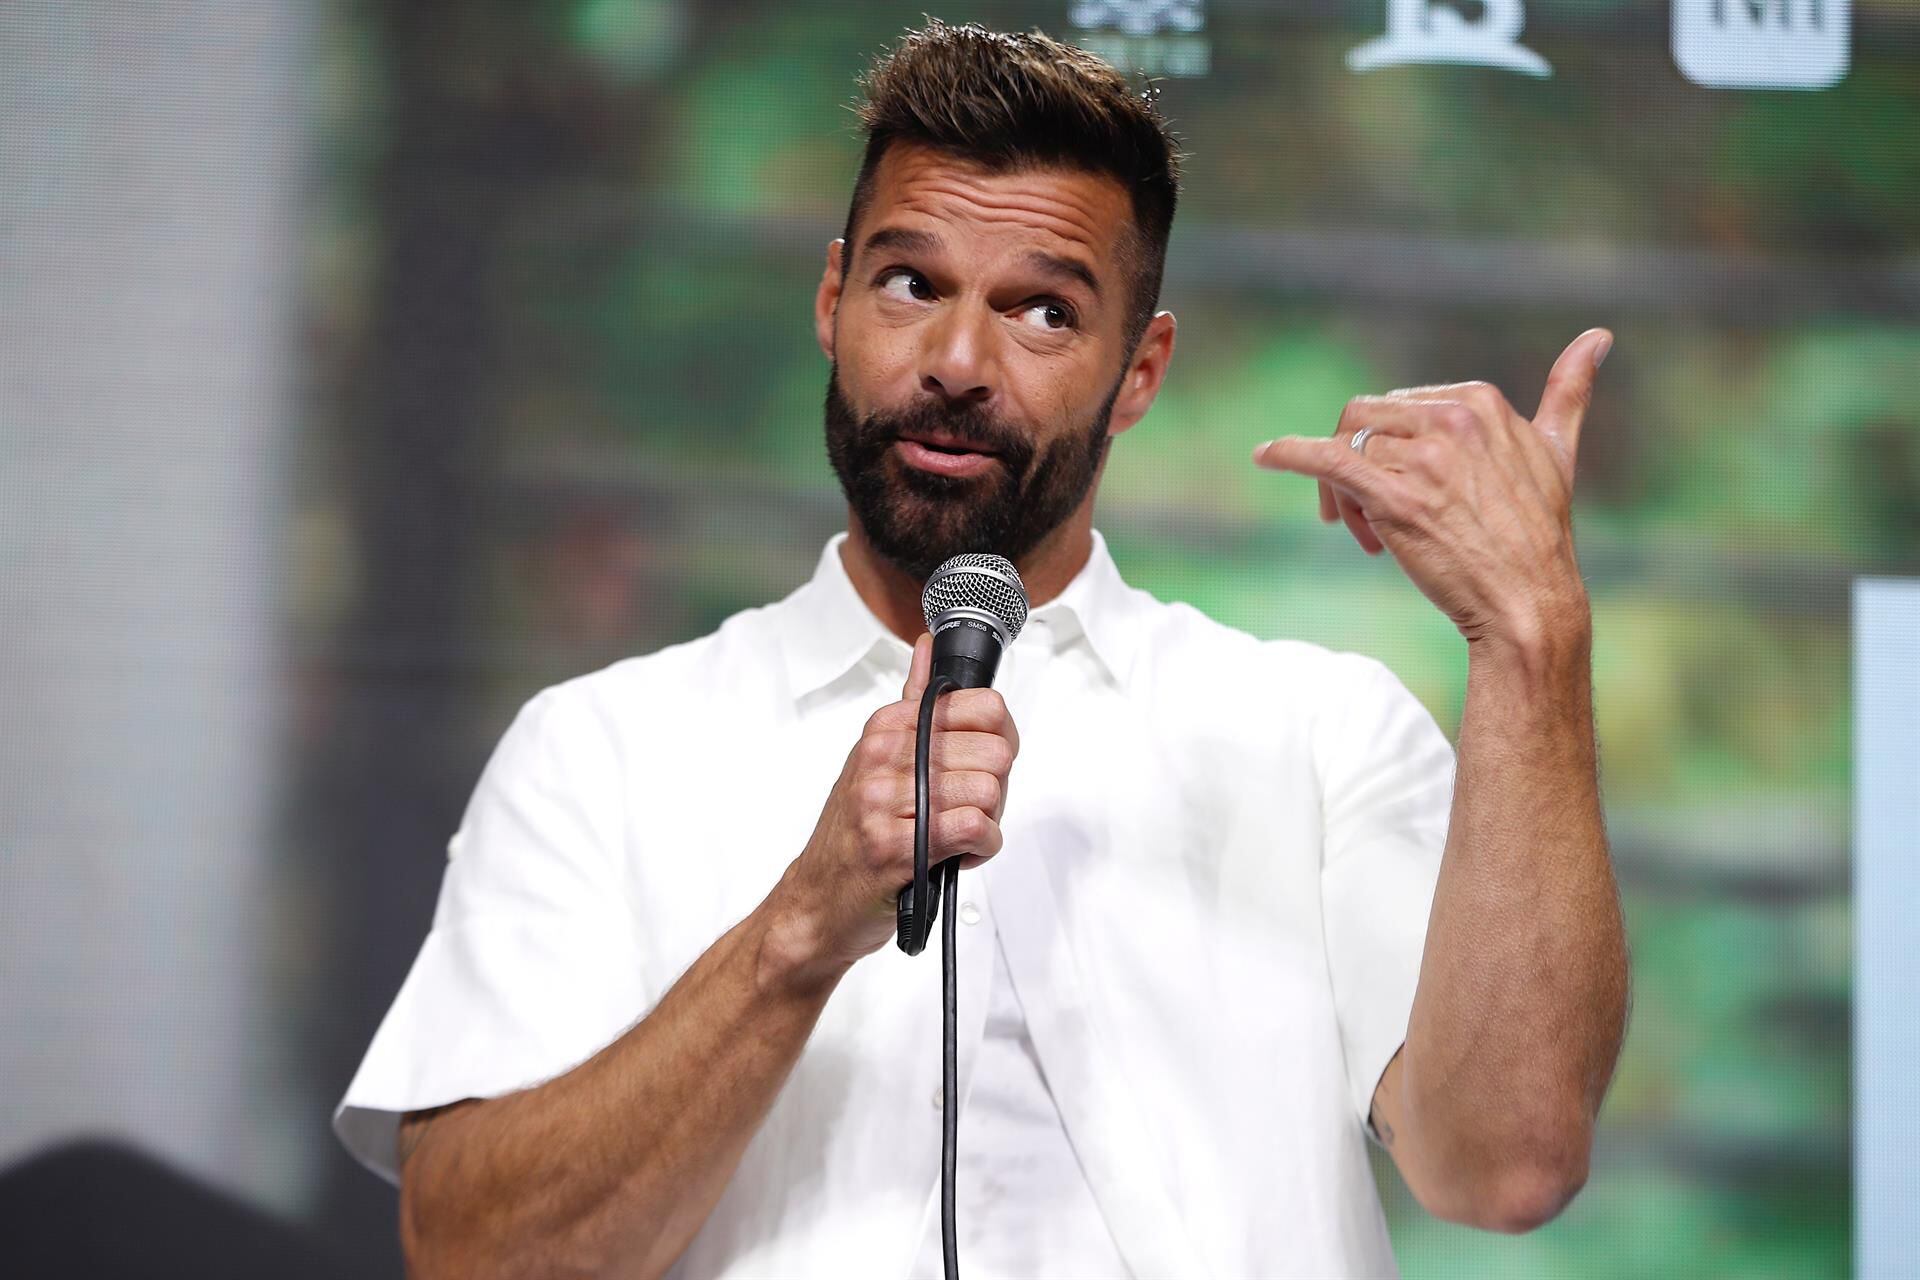 ¿Otra? Ricky Martin enfrenta nueva demanda por agresión sexual en Puerto Rico